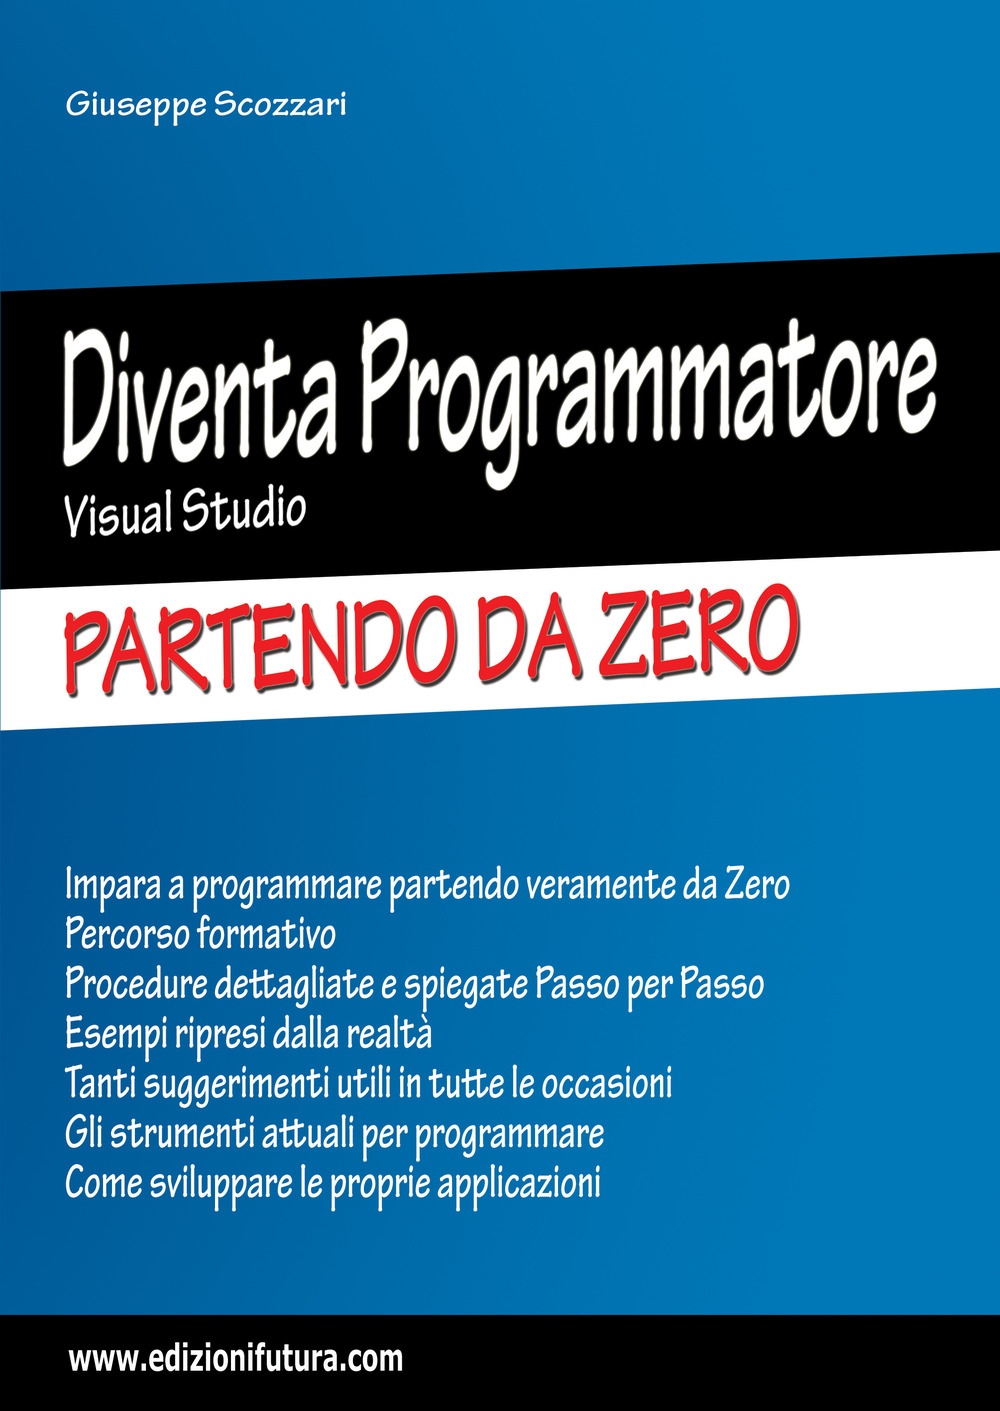 Libri Giuseppe Scozzari - Diventa Programmatore Visual Studio. Partendo Da Zero. Ediz. Ampliata NUOVO SIGILLATO, EDIZIONE DEL 16/02/2023 SUBITO DISPONIBILE